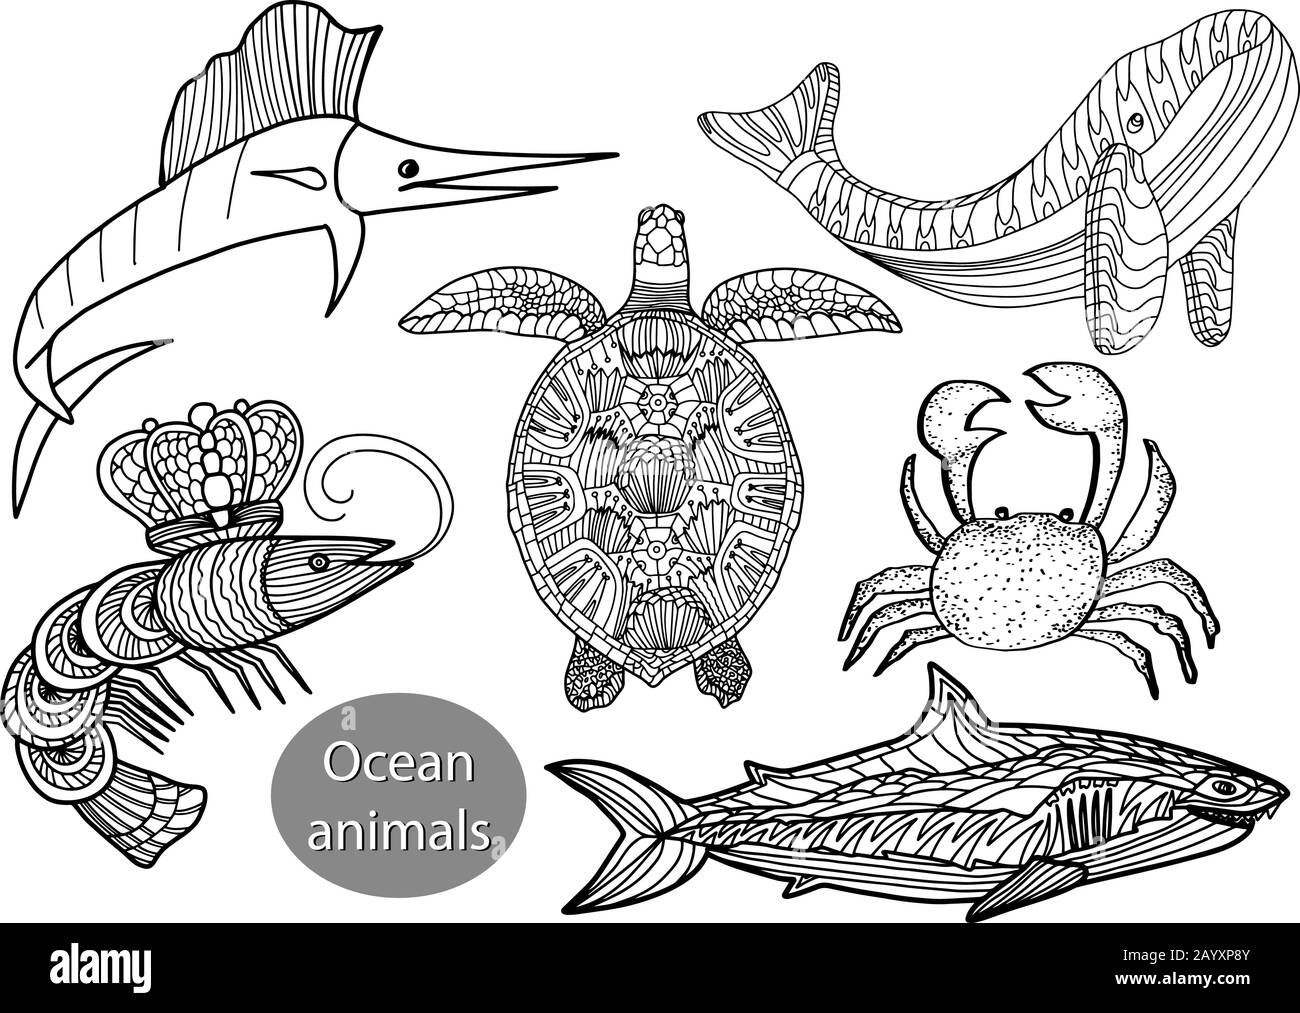 Ensemble avec des animaux de l'océan dans le style des gribouillis isolé sur fond blanc. Illustration vectorielle.poisson Marlin,tortue, crevette,requin,baleine,crabe. Illustration de Vecteur